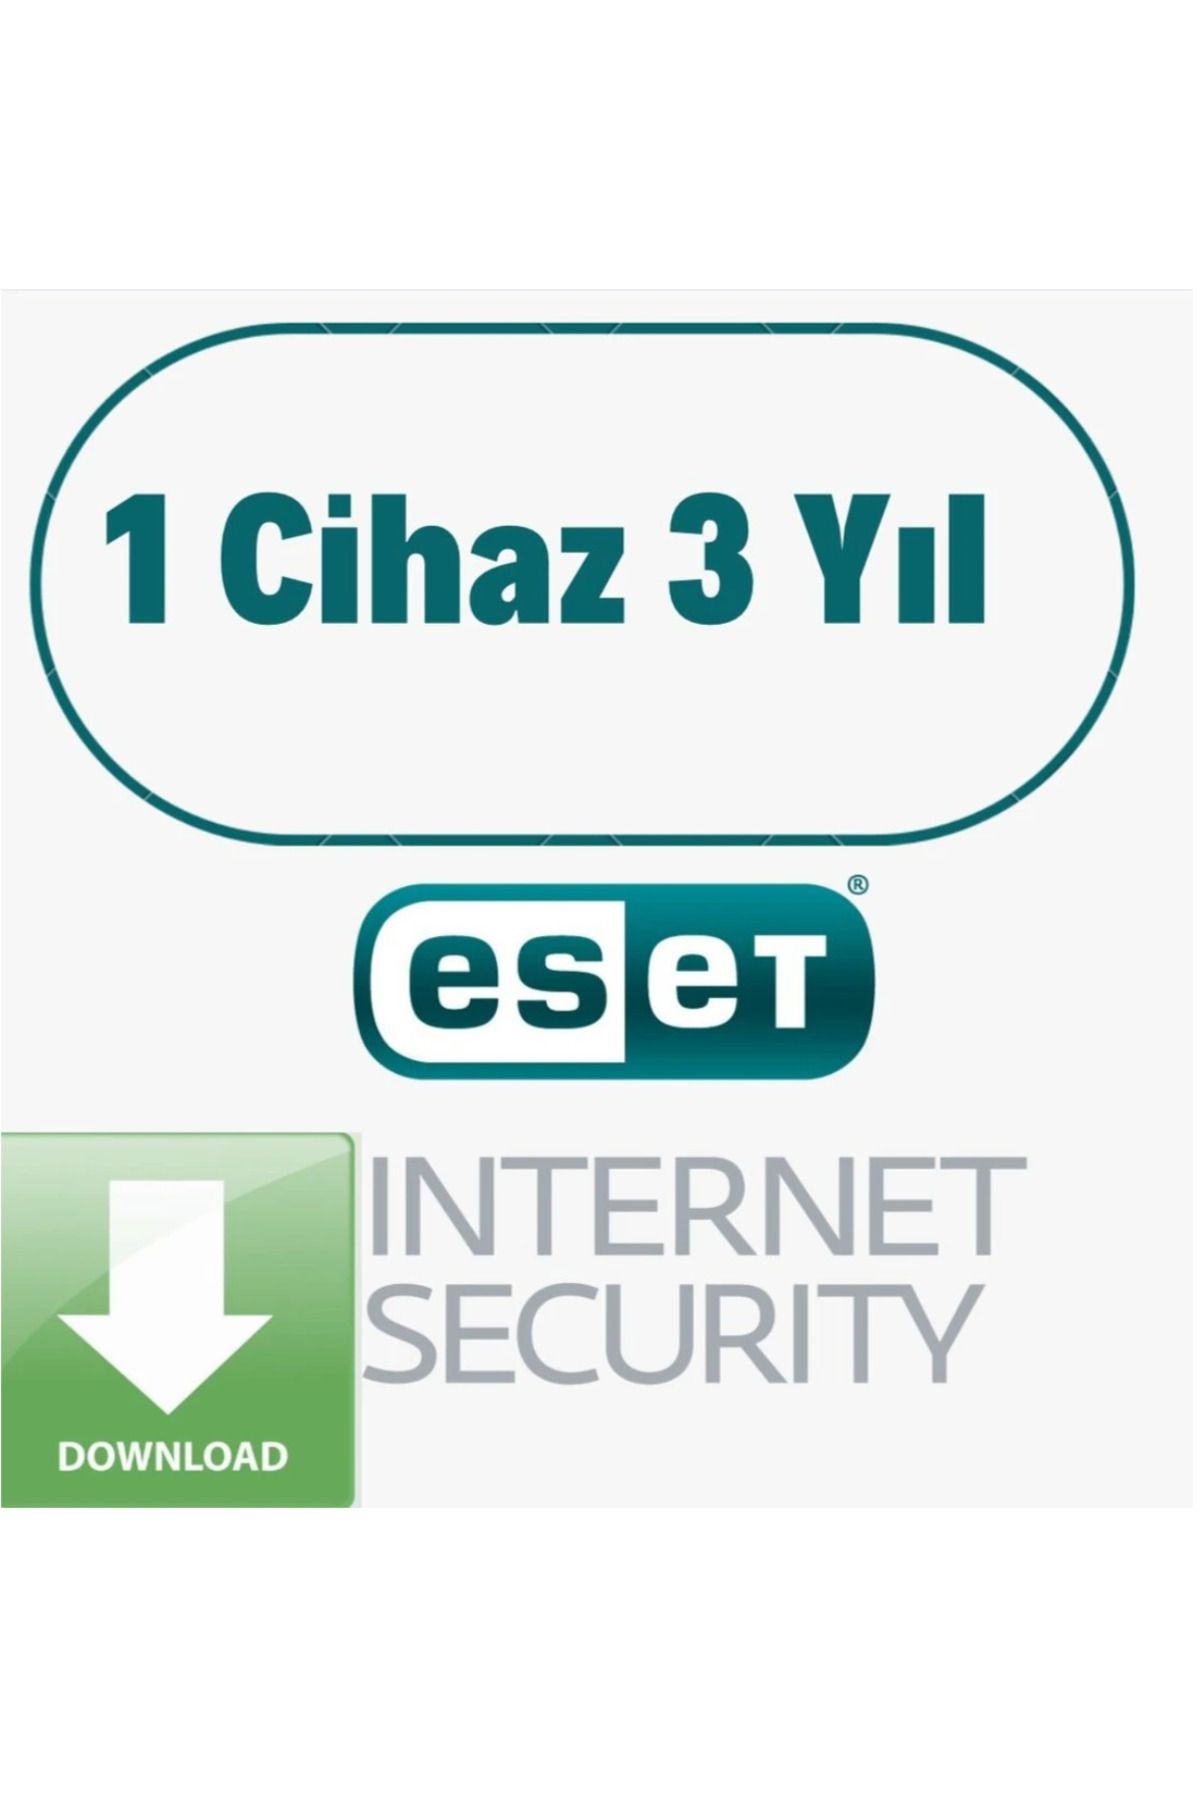 Eset İnternet Security 1 Cihaz 3 Yıl Dijital Teslimat